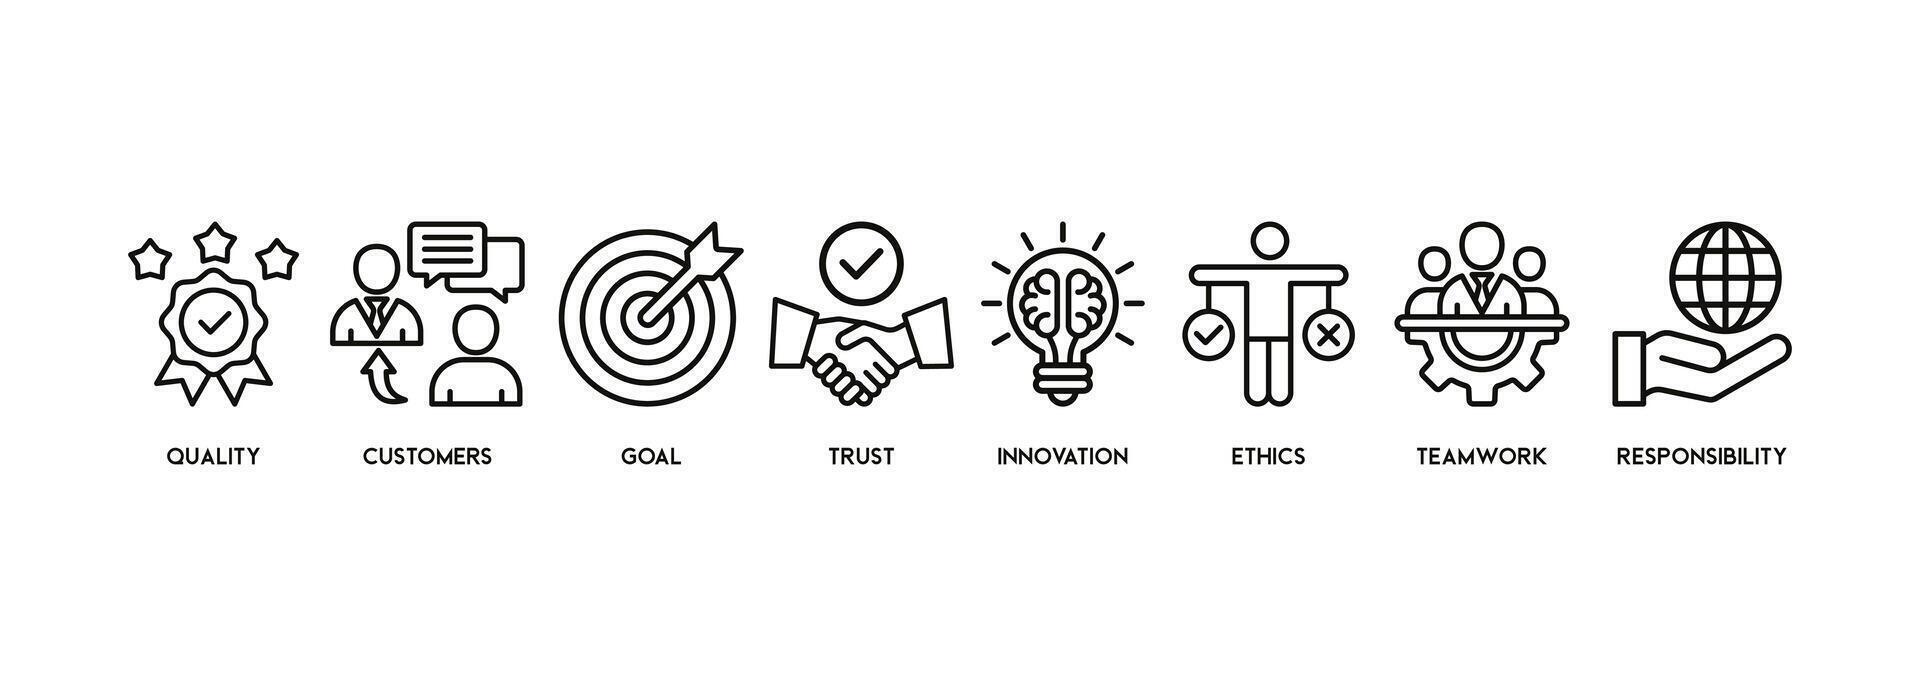 negocio núcleo valores bandera web icono vector ilustración concepto con icono de calidad, clientes, meta, confianza, innovación, ética, trabajo en equipo, responsabilidad